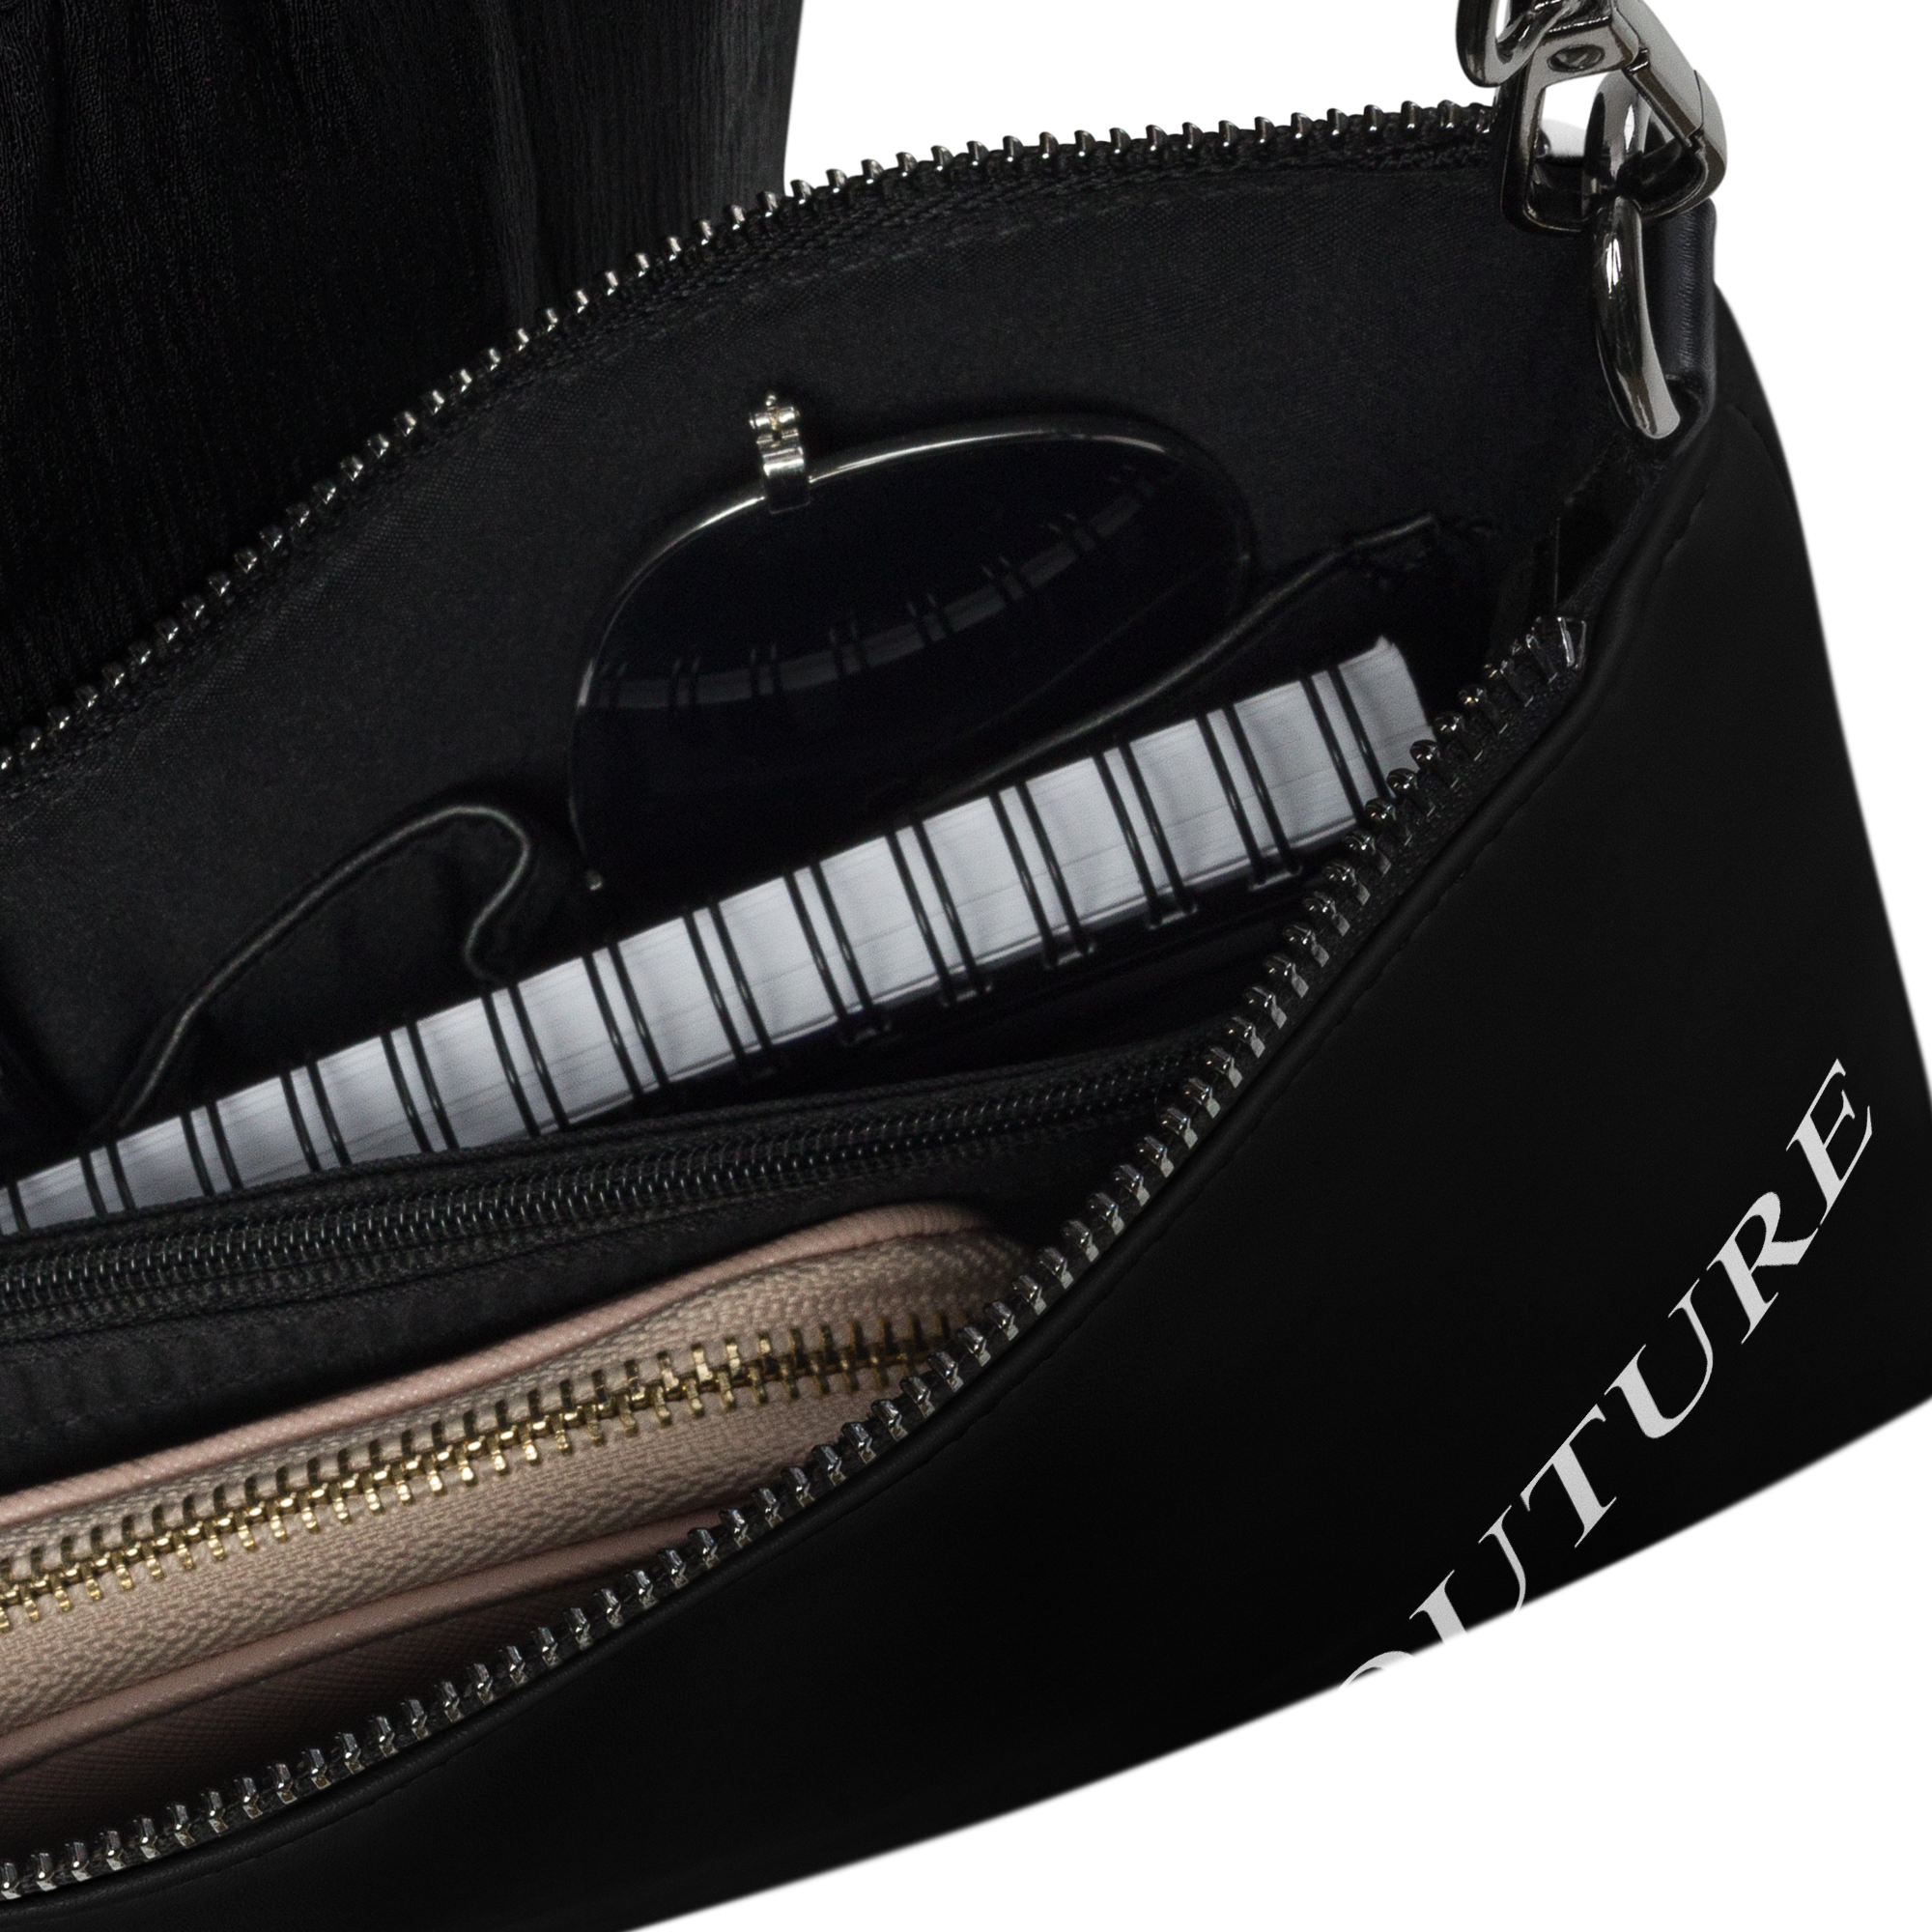 Ivorie Couture Signature Noir Crossbody Handbag Crossbody bag black inside purse view